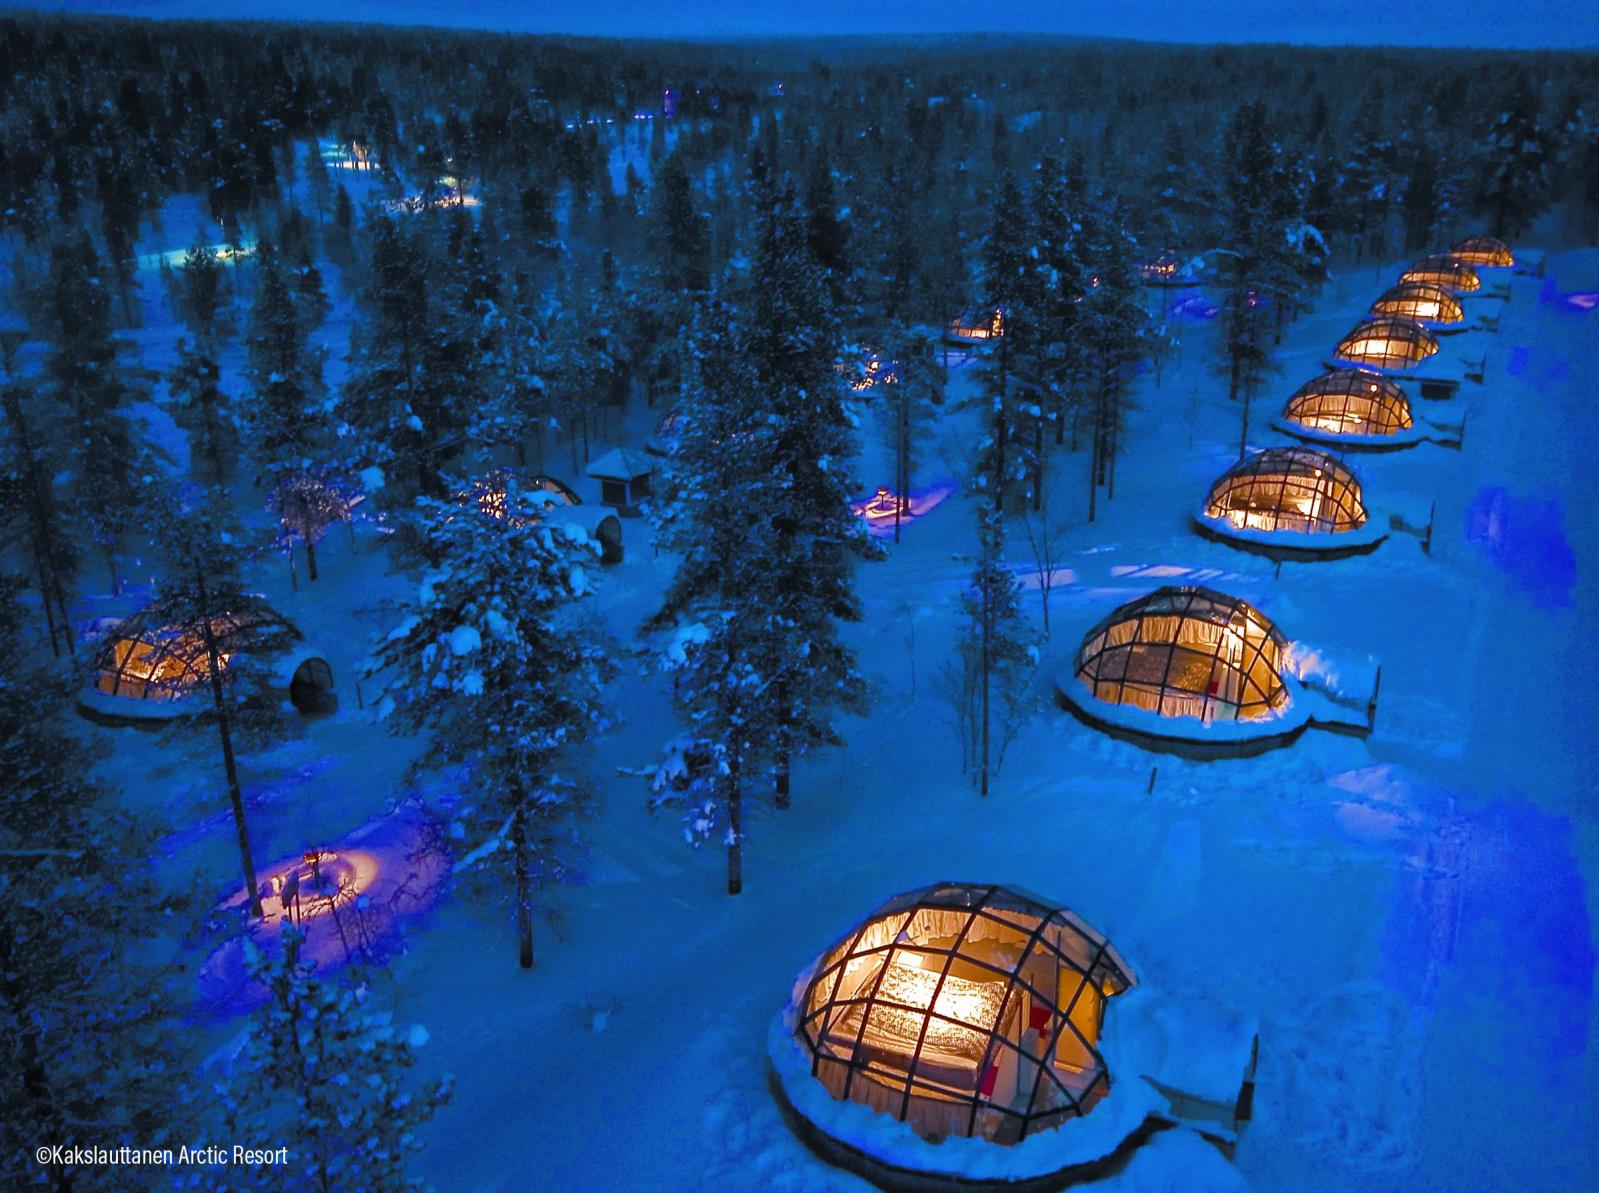 image of Kakslauttanen Arctic Resort in Finland